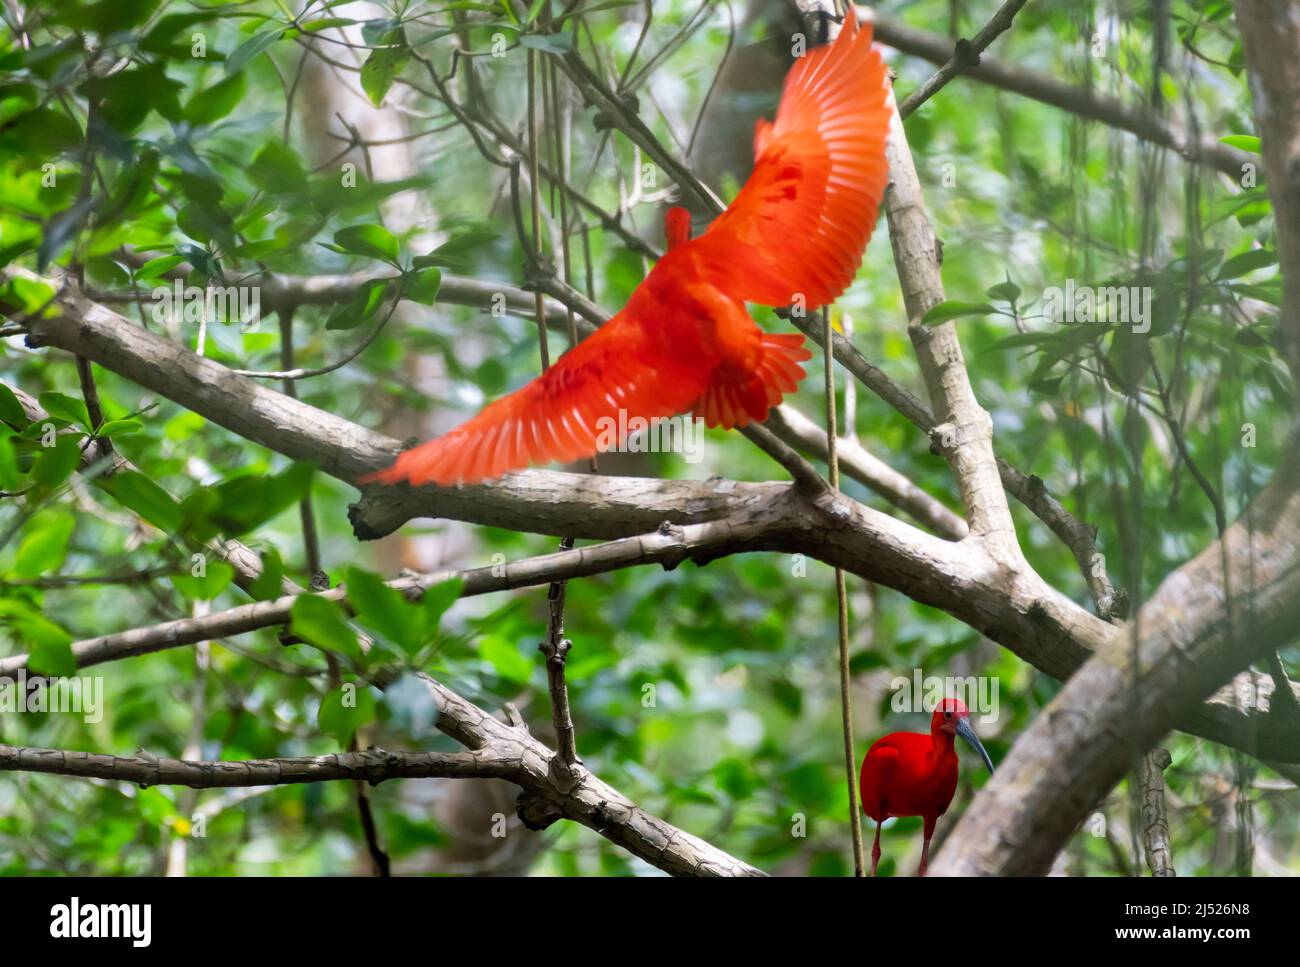 Schöne rote scharlachrote Ibis, Eudocimus ruber, in ihrem natürlichen Lebensraum, Mangrovenwald in Caroni, Trinidad, Westindien. Nationalvogel Trinidad Tobago Stockfoto